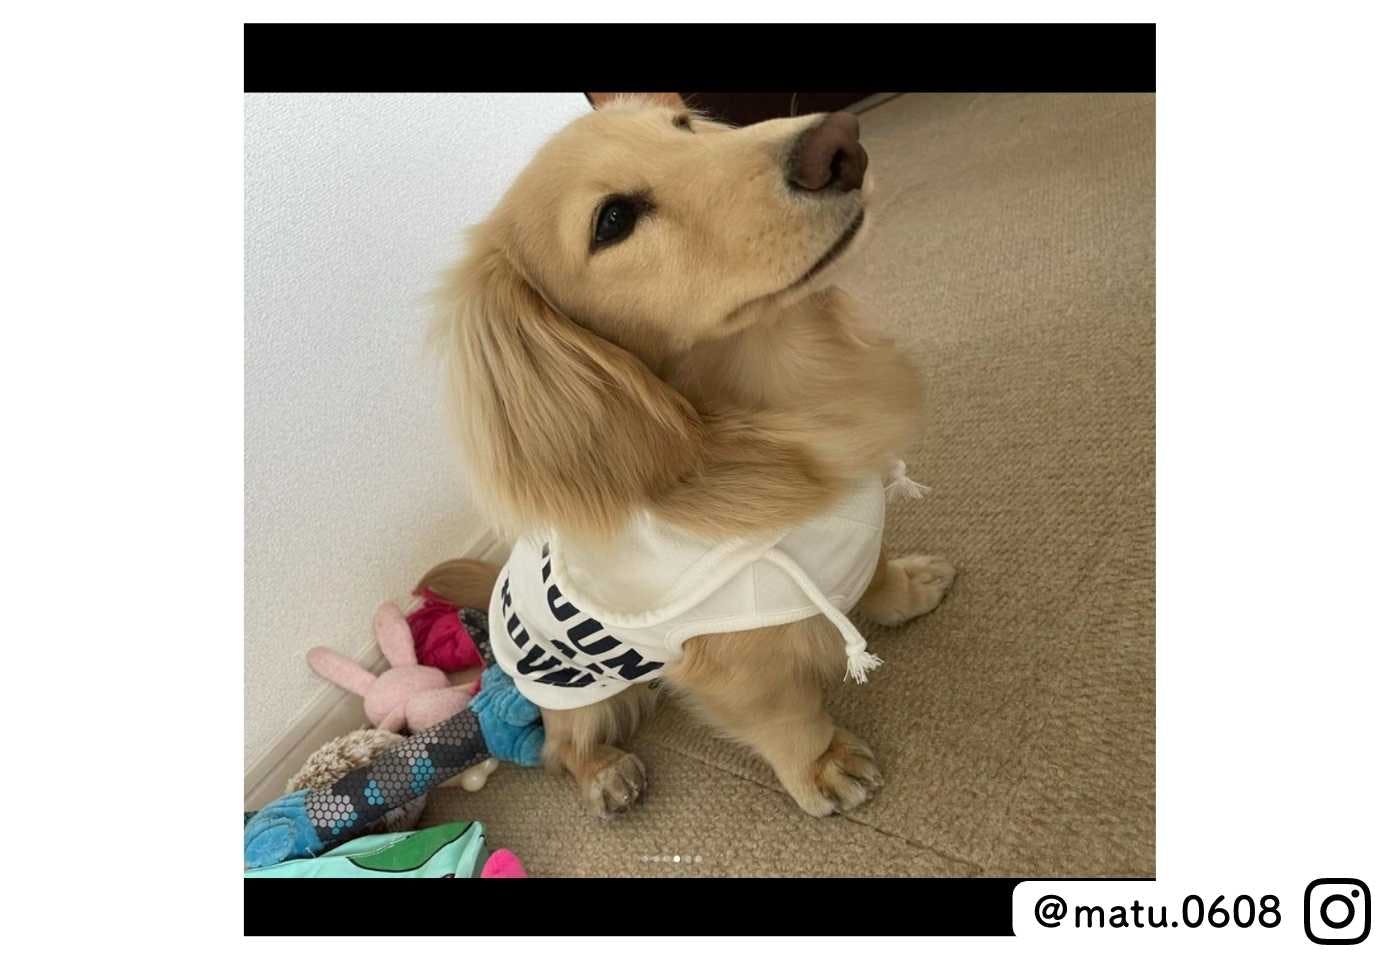 カインズの可愛い犬服 スポーティプリントパーカーを着たミニチュアダックスフンド@matsu.0608